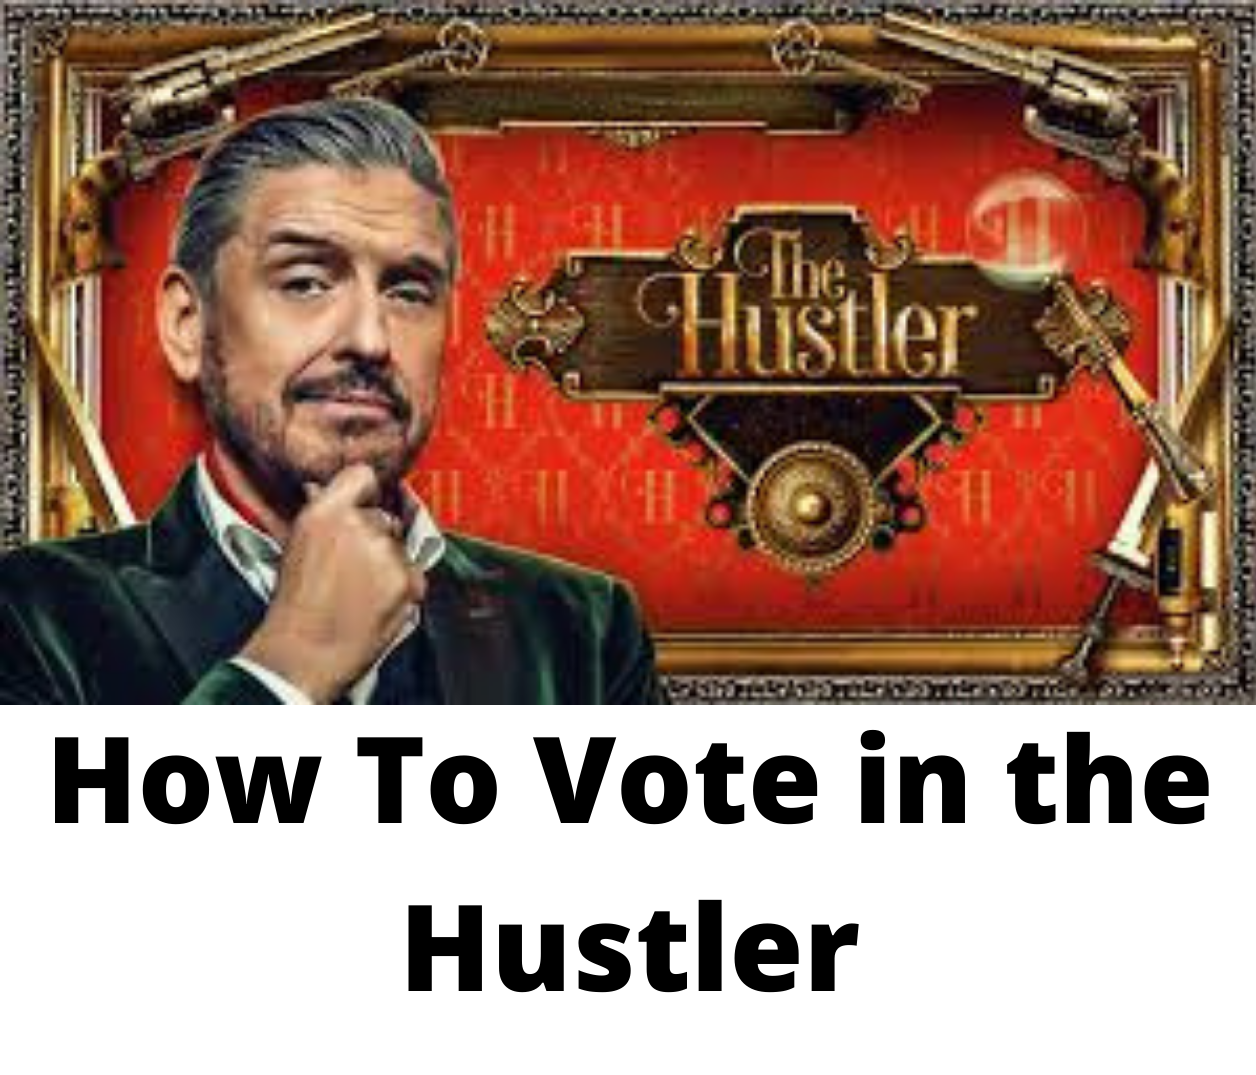 The Hustler voting